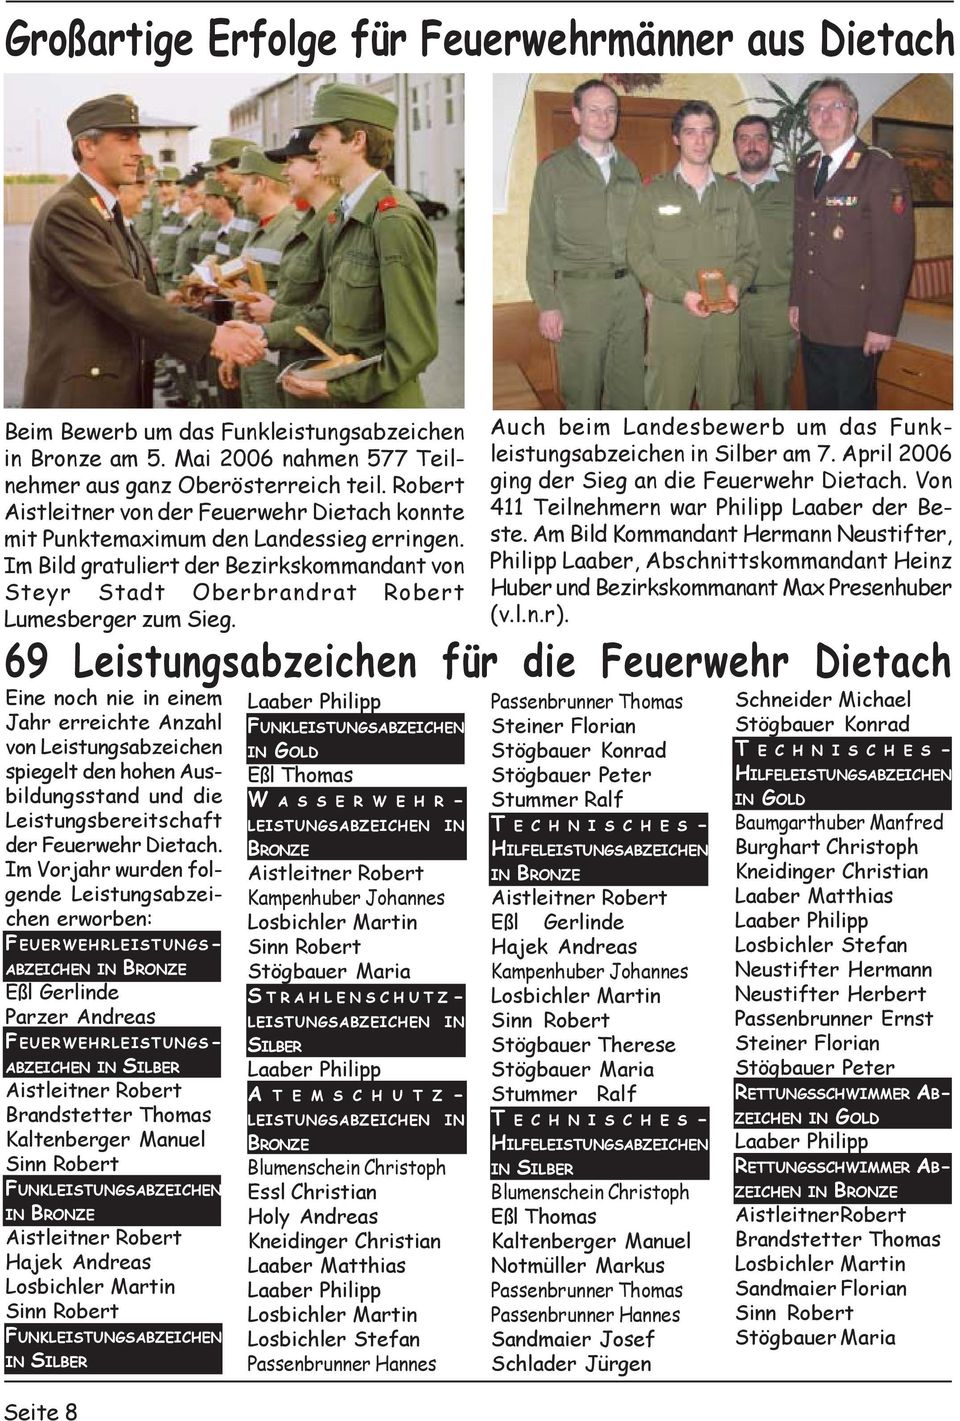 Seite 8 Auch beim Landesbewerb um das Funkleistungsabzeichen in Silber am 7. April 2006 ging der Sieg an die Feuerwehr Dietach. Von 411 Teilnehmern war Philipp Laaber der Beste.